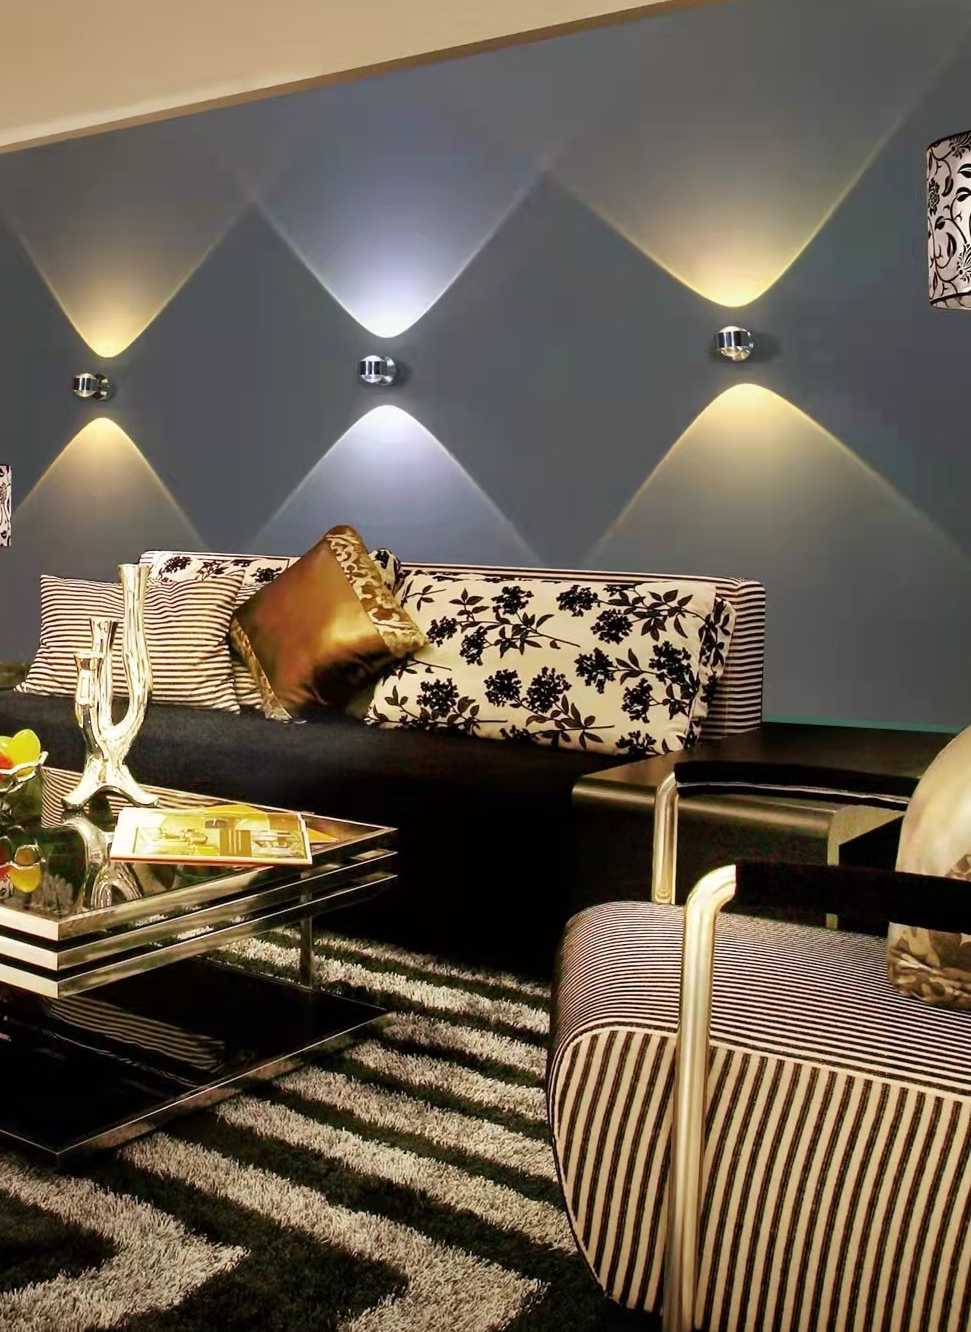 Tanio Up Down LED kinkiet nowoczesny kryty Hotel Decora ściana świ… sklep